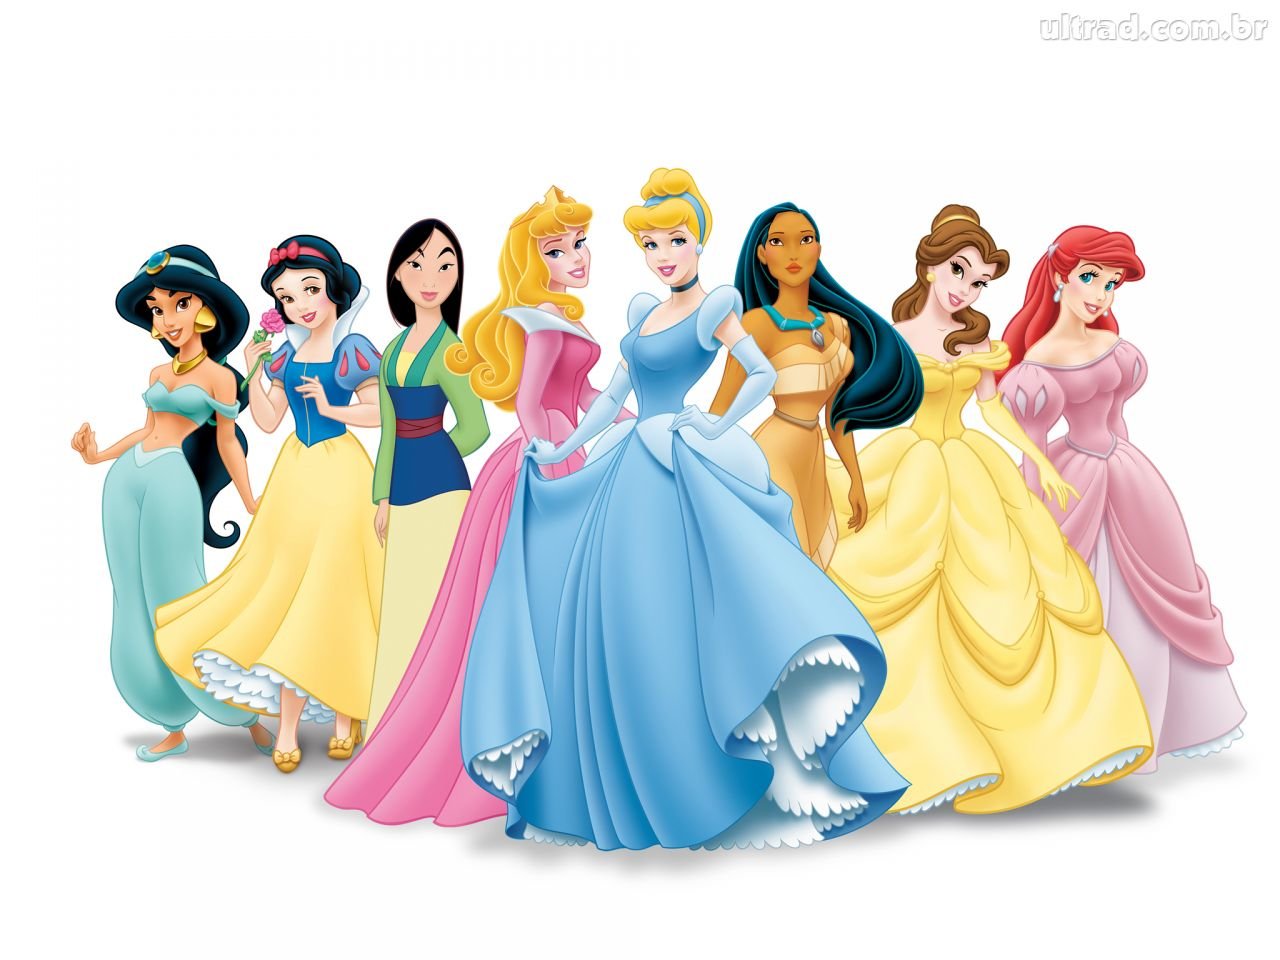 Preços baixos em Jogos de princesa da Disney sem marca